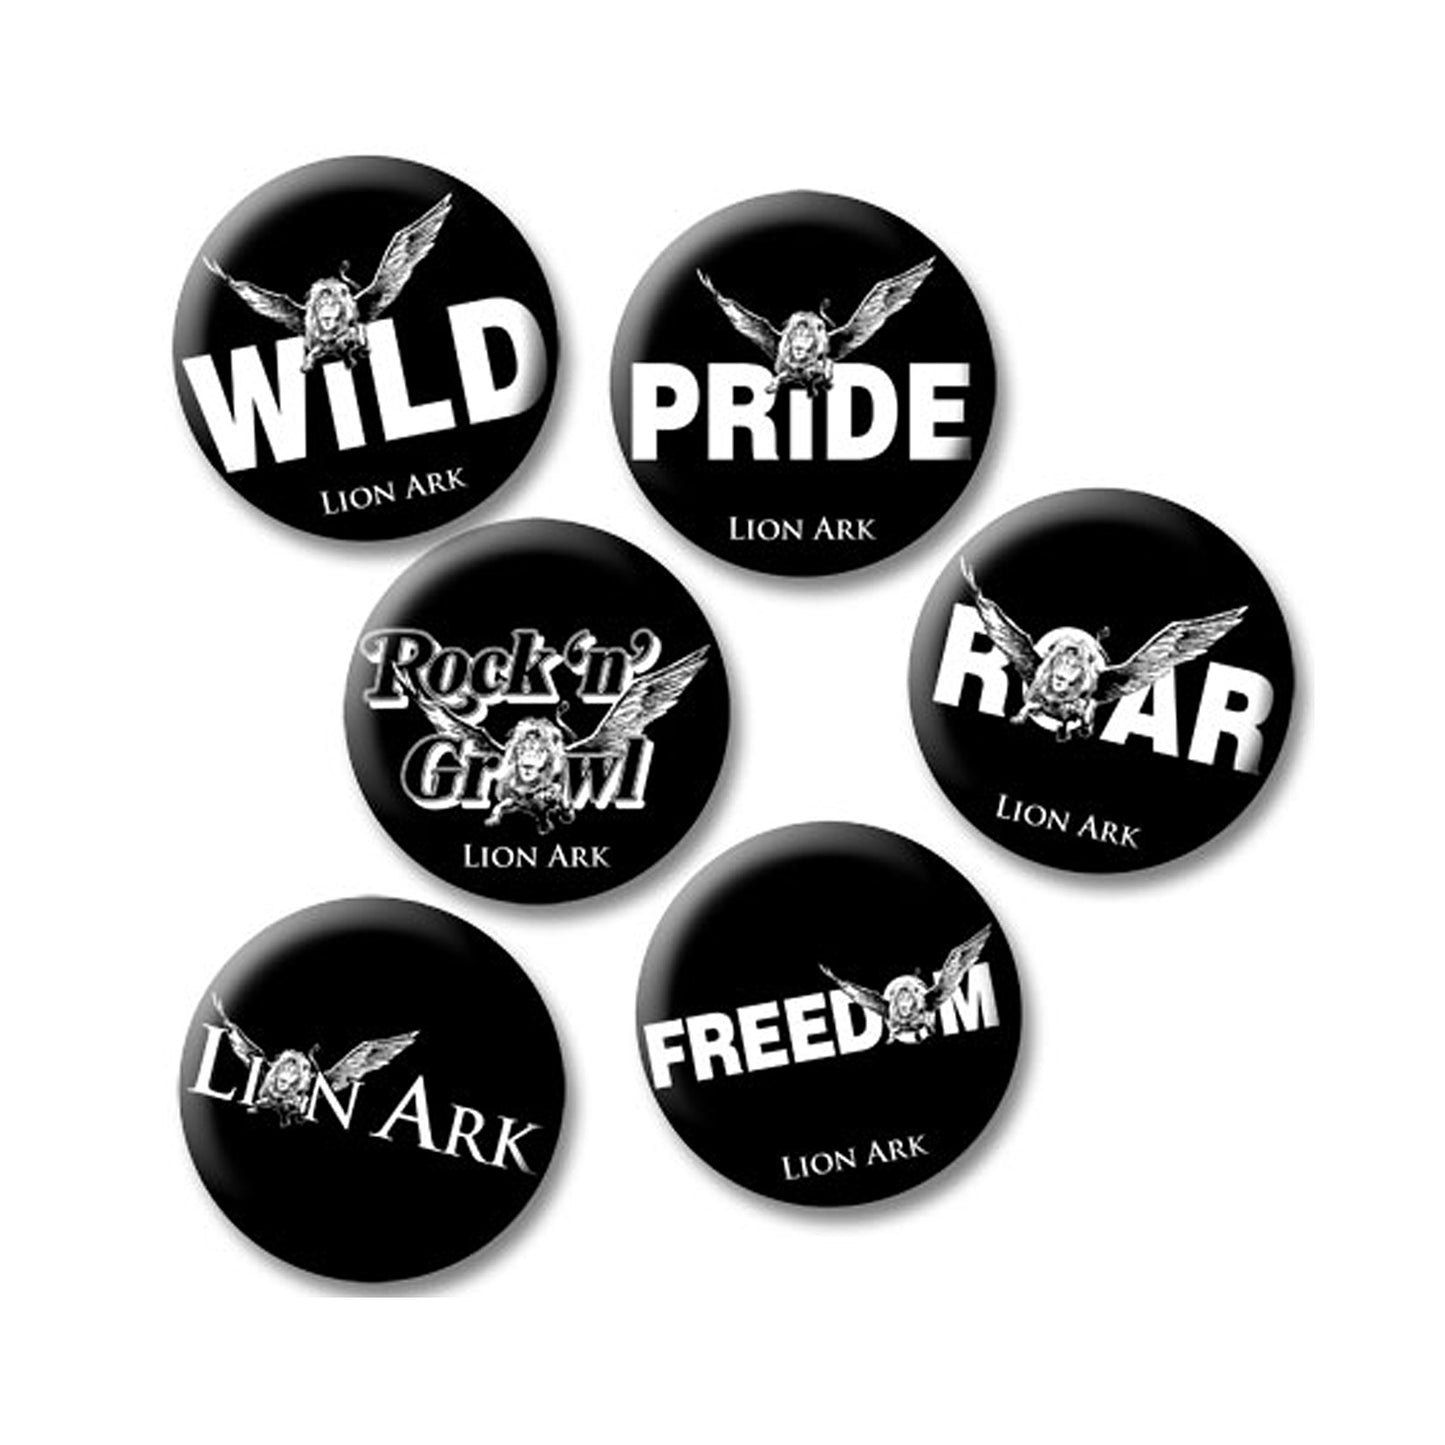 Lion Ark badges